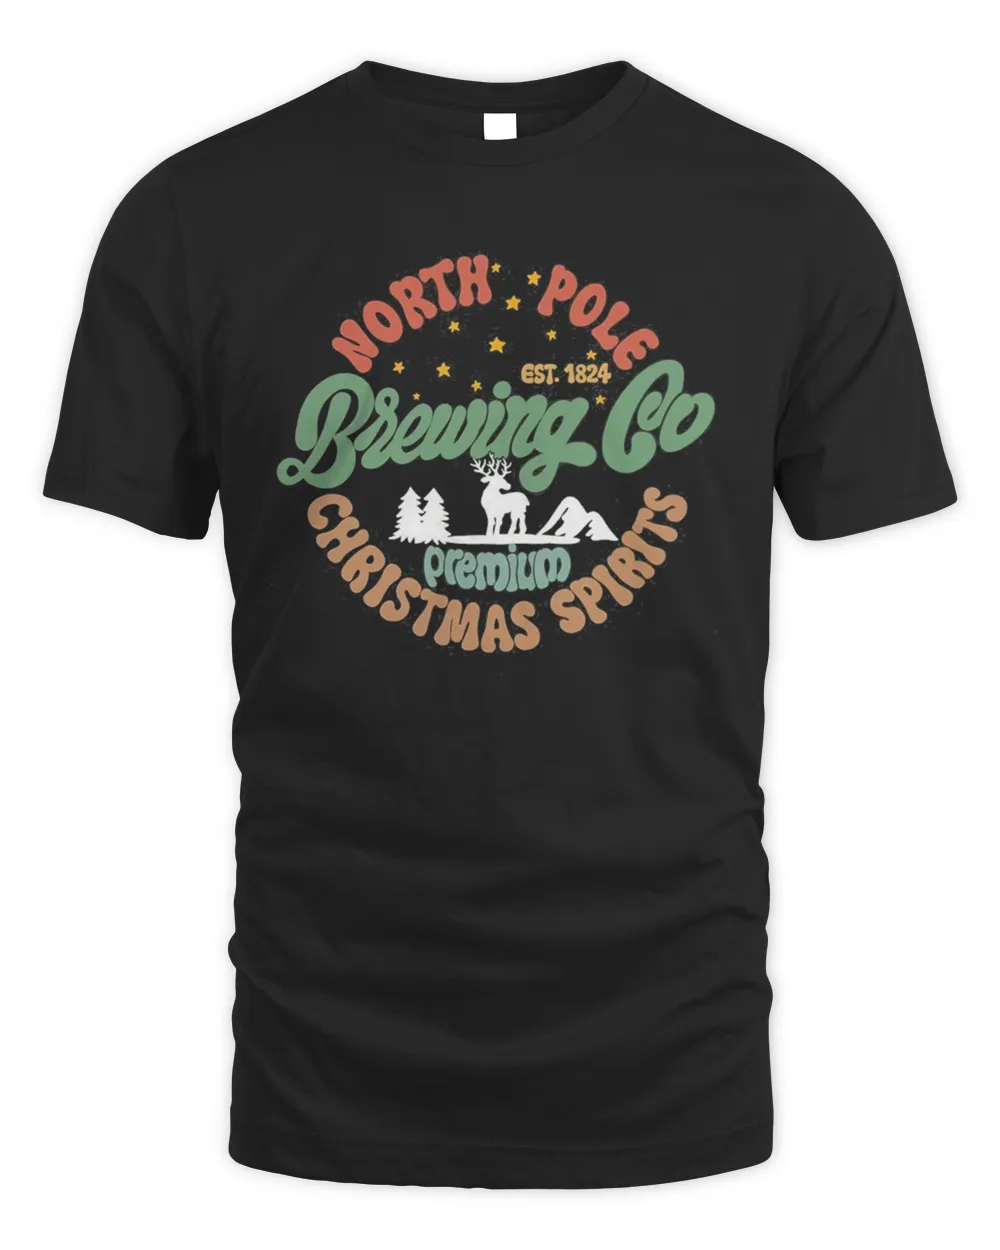 North Pole Brewing Co Santa Christmas T-Shirt